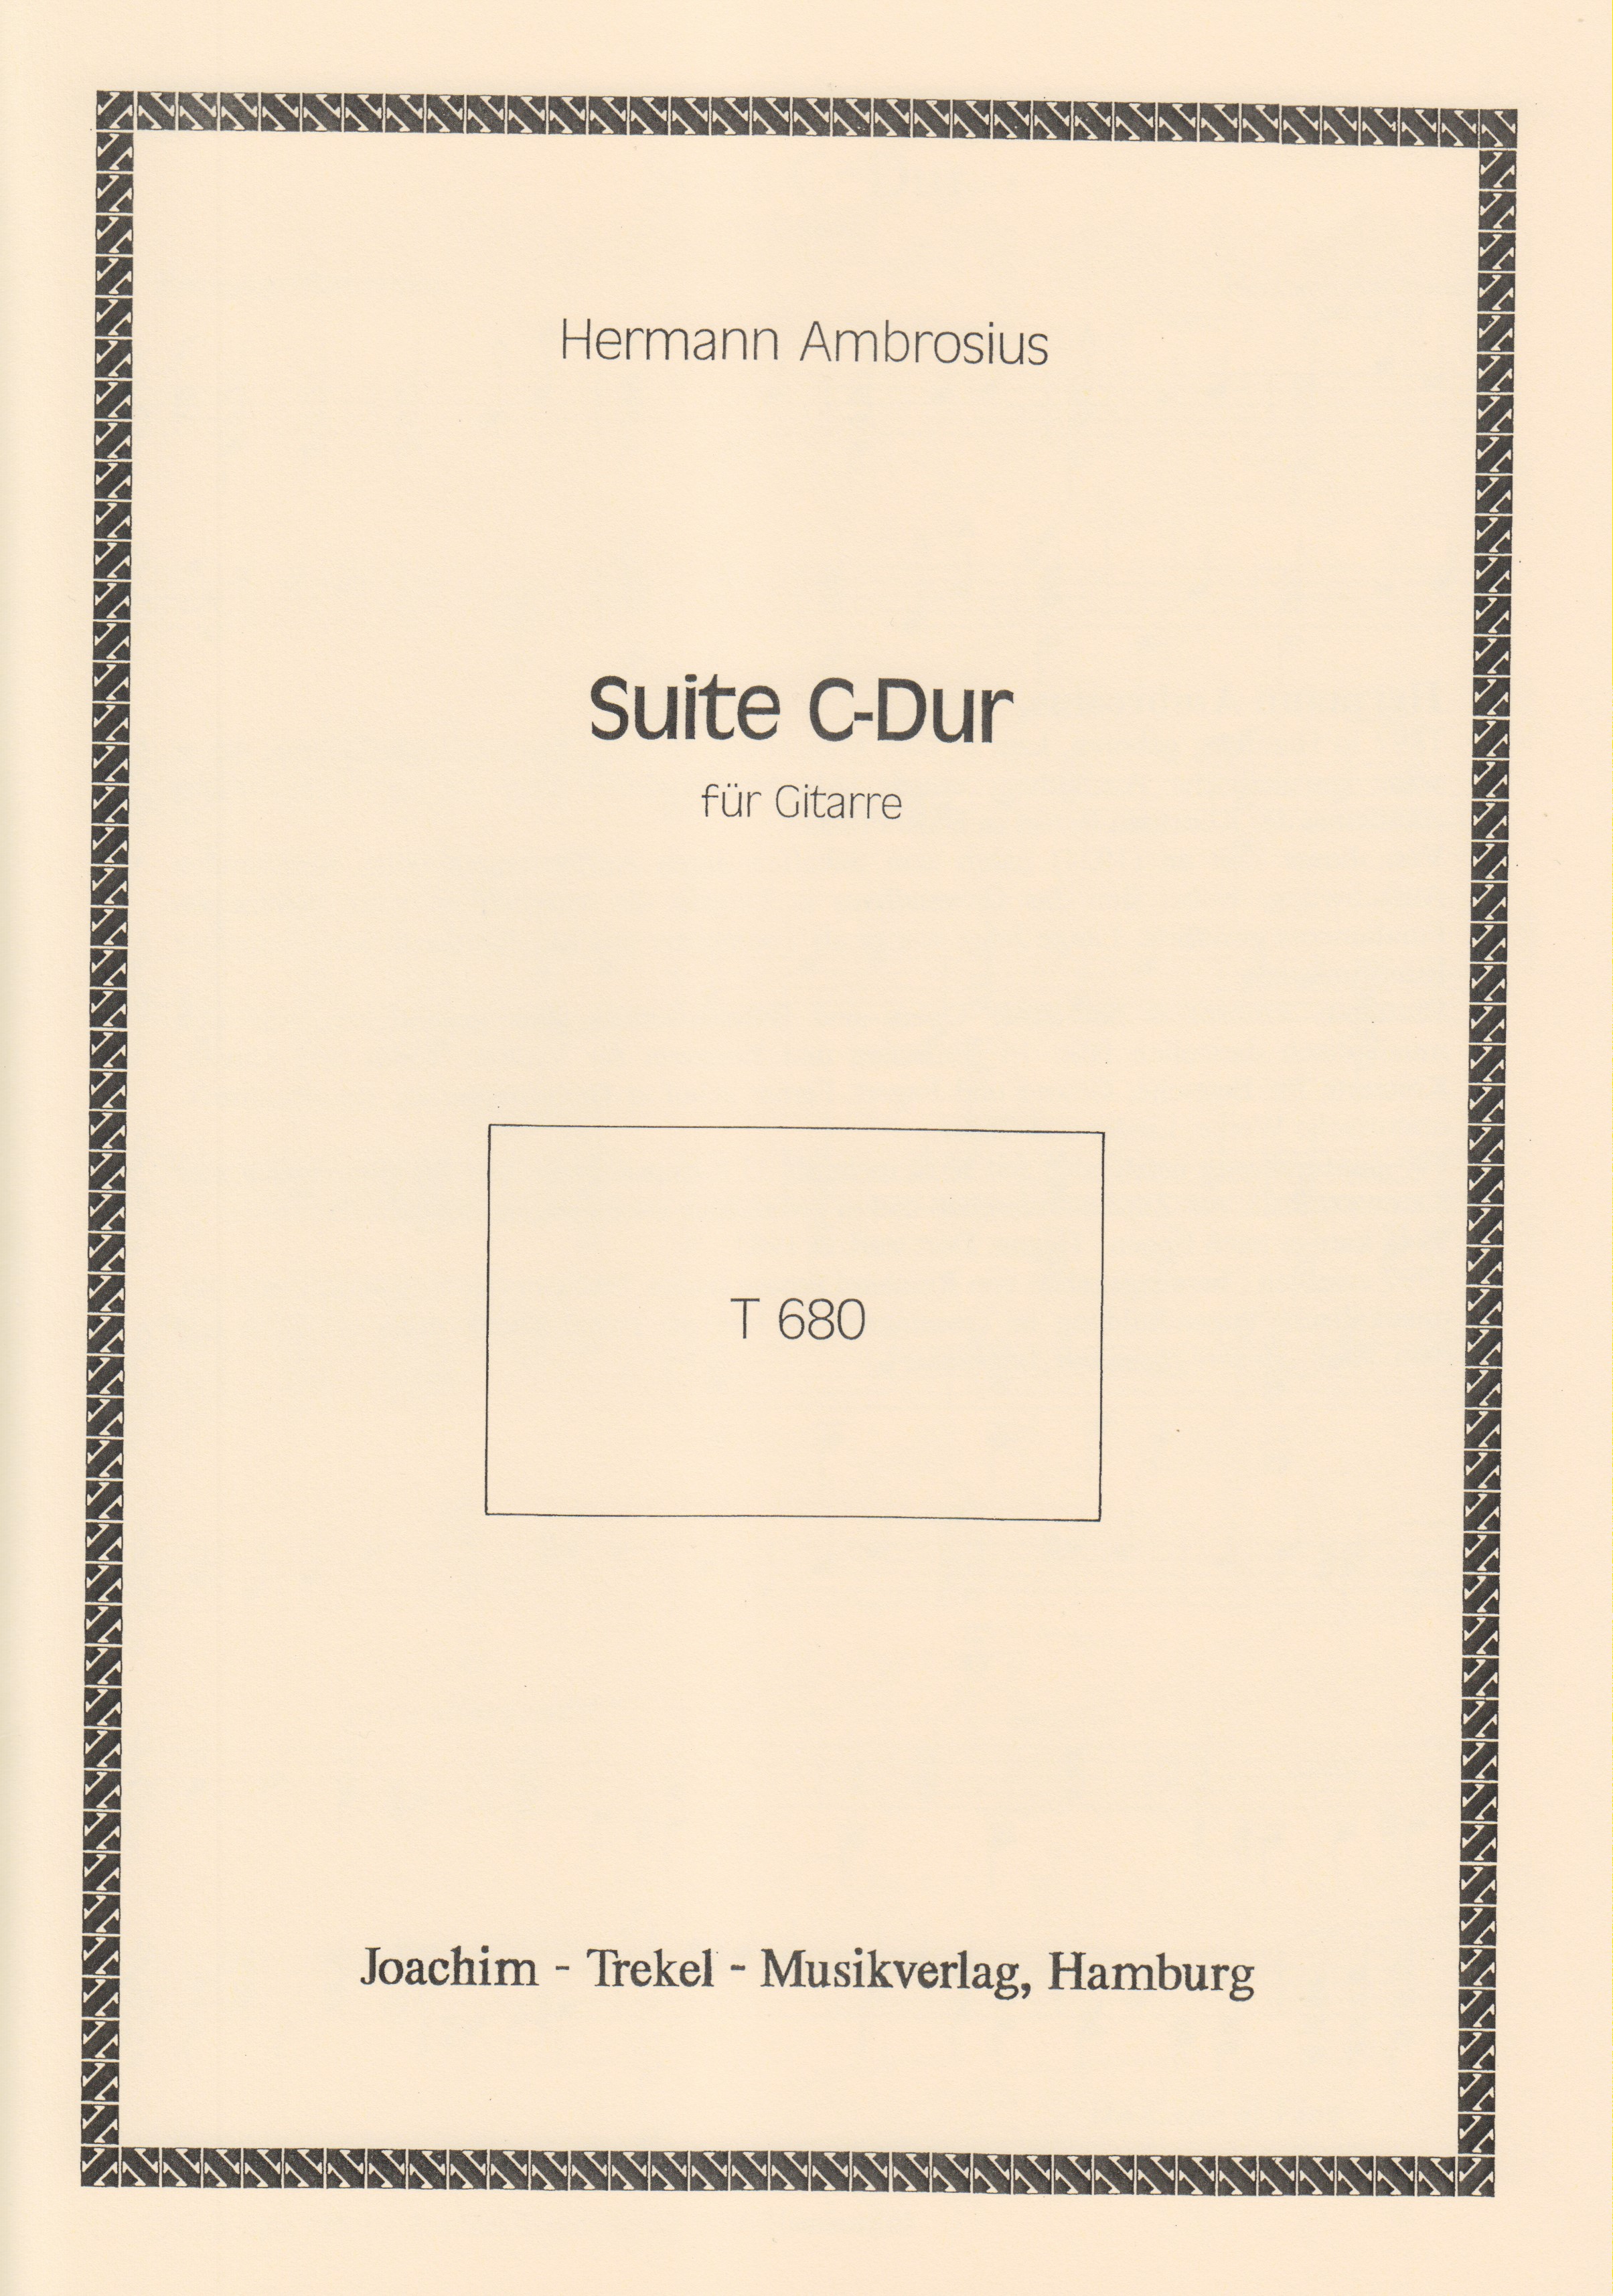 Suite C-Dur